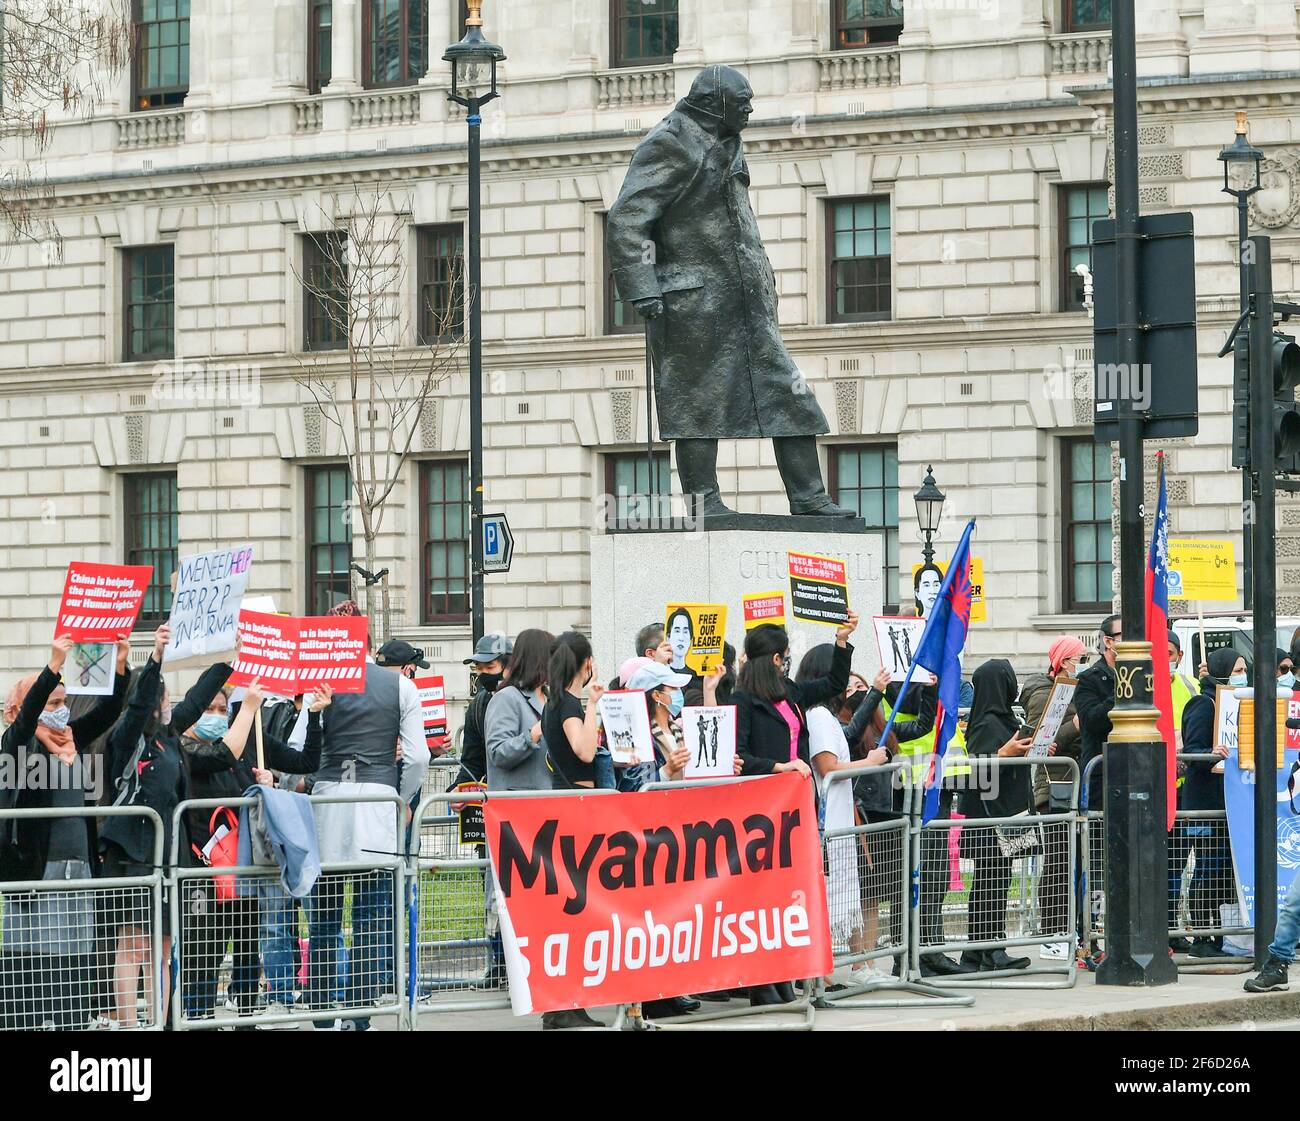 Londres, Royaume-Uni. 31 mars 2021. Une protestation contre le régime militaire au Myanmar en dehors des chambres du Parlement crédit: Ian Davidson/Alay Live News Banque D'Images